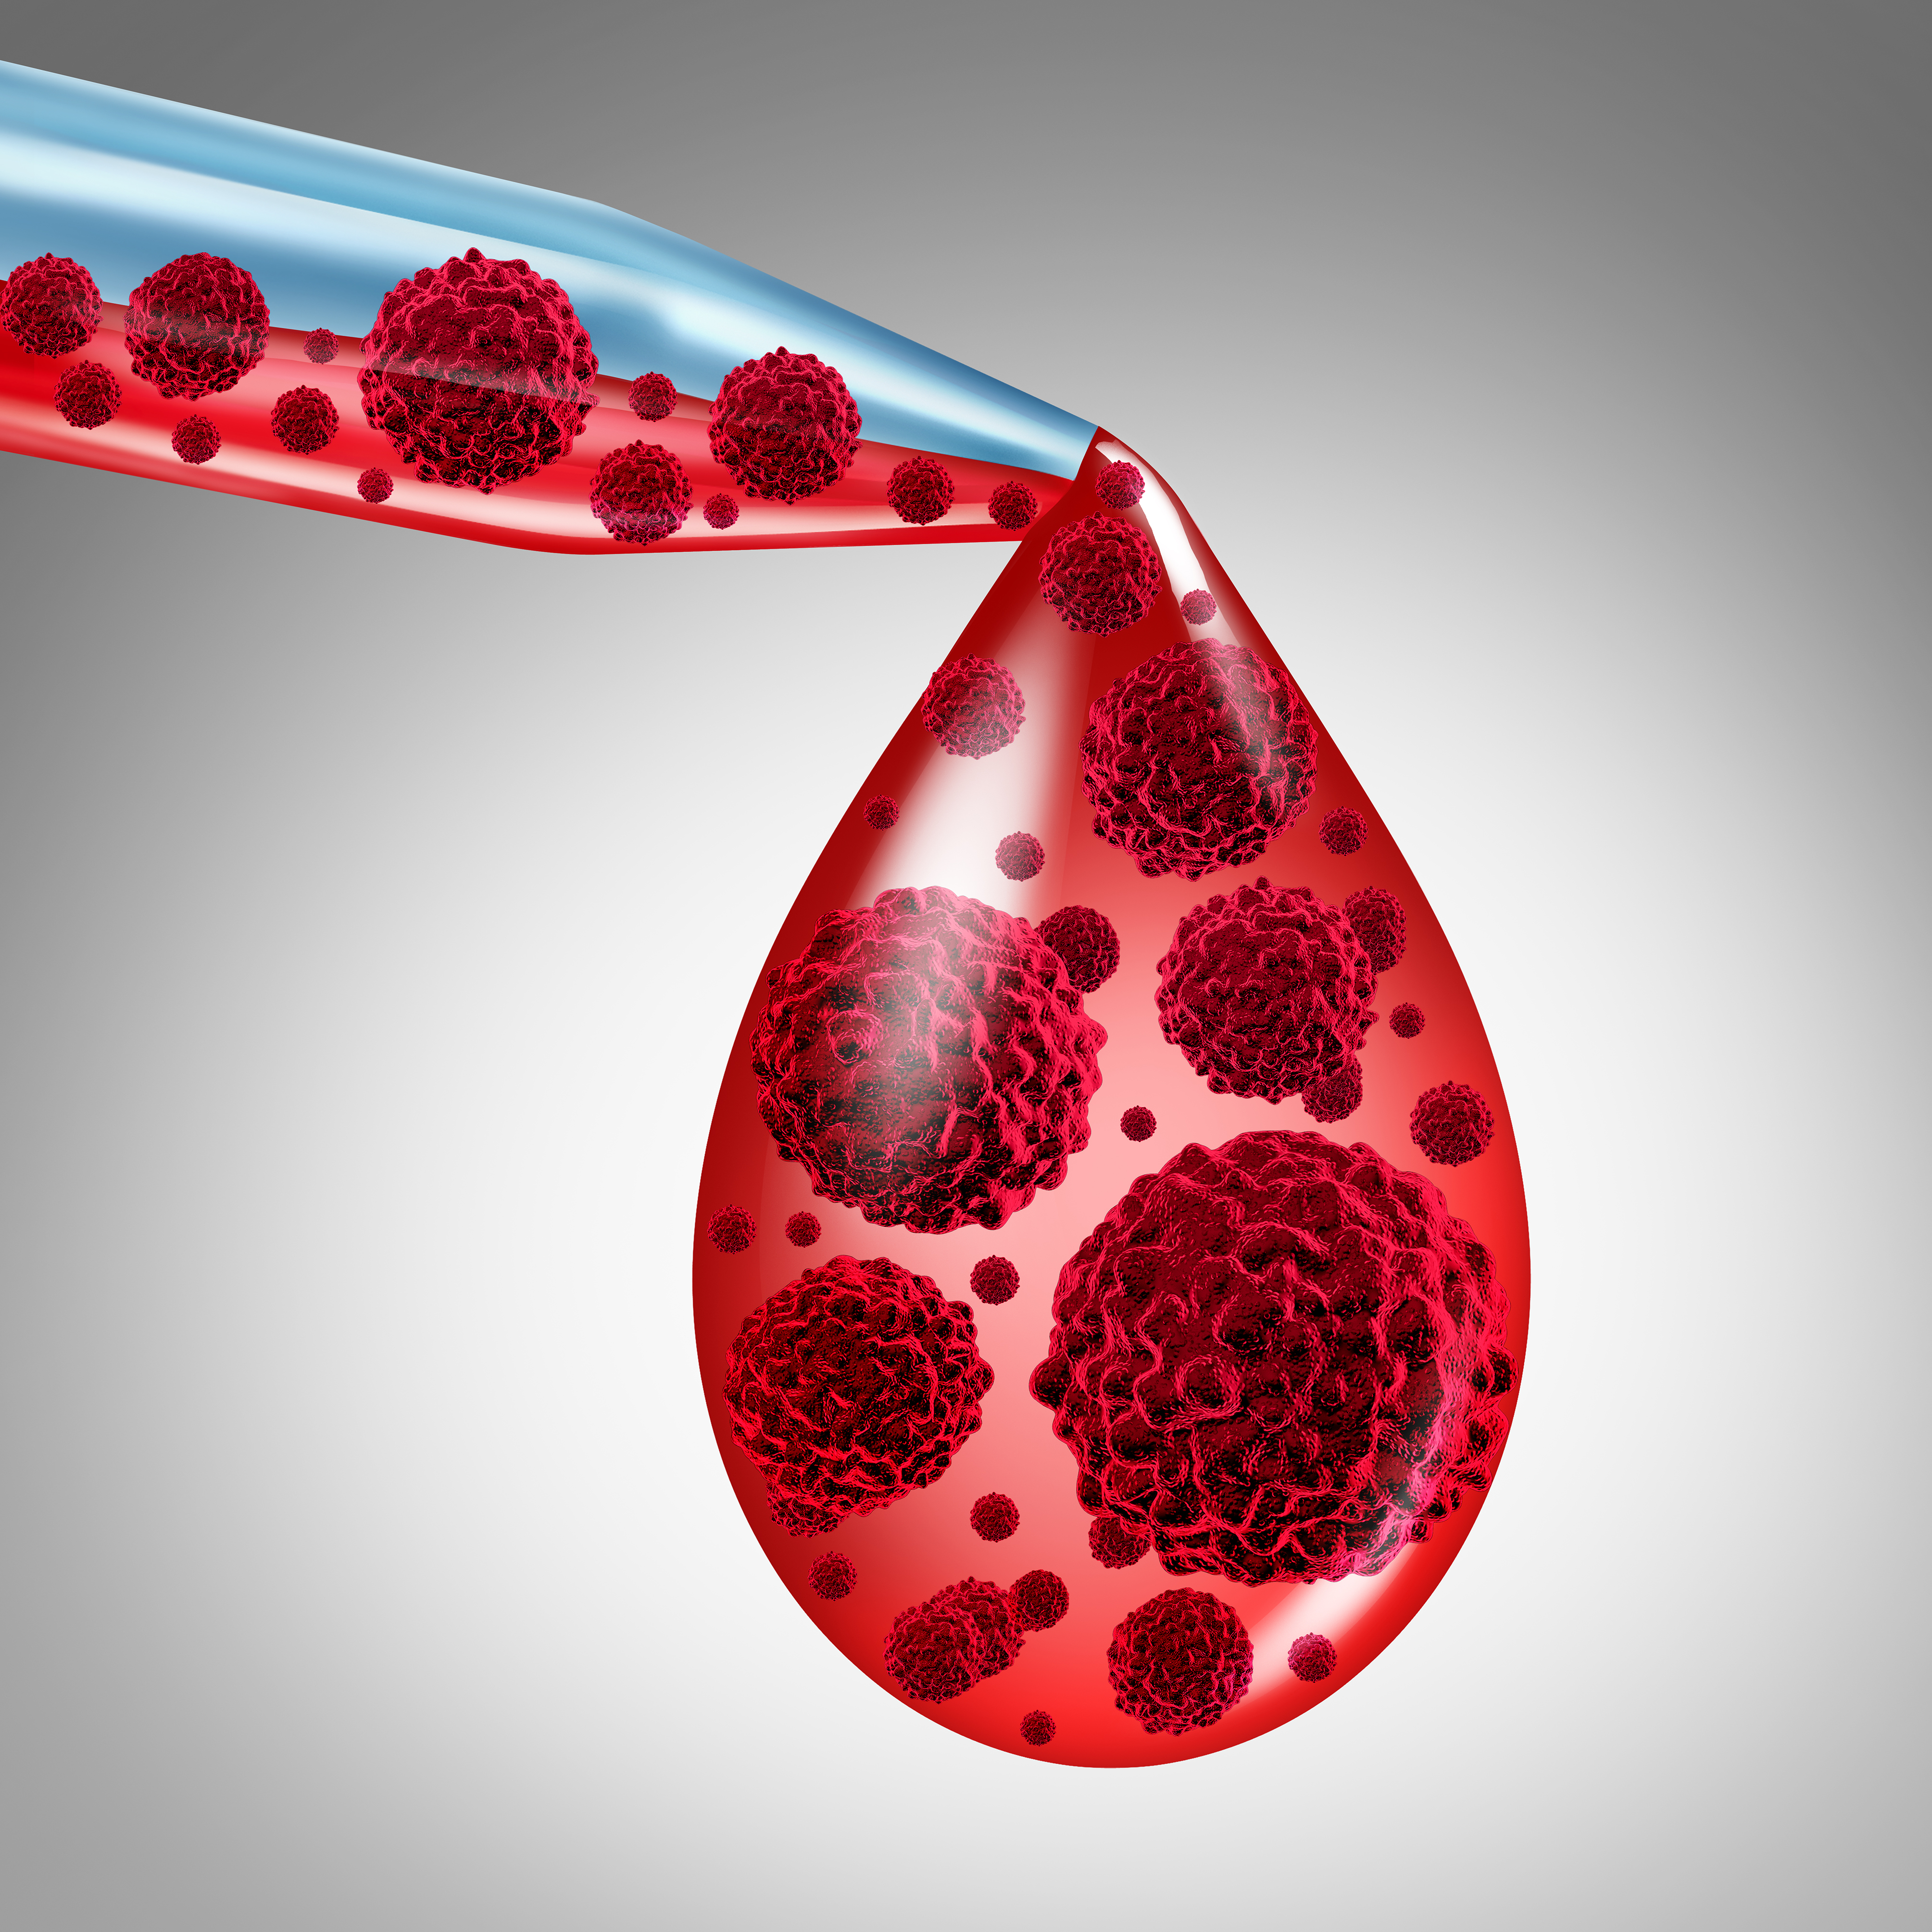 【Leukemia】PD-L<font color="red">1</font>和IDO<font color="red">1</font>高表达与NK/T细胞淋巴瘤生存不佳相关